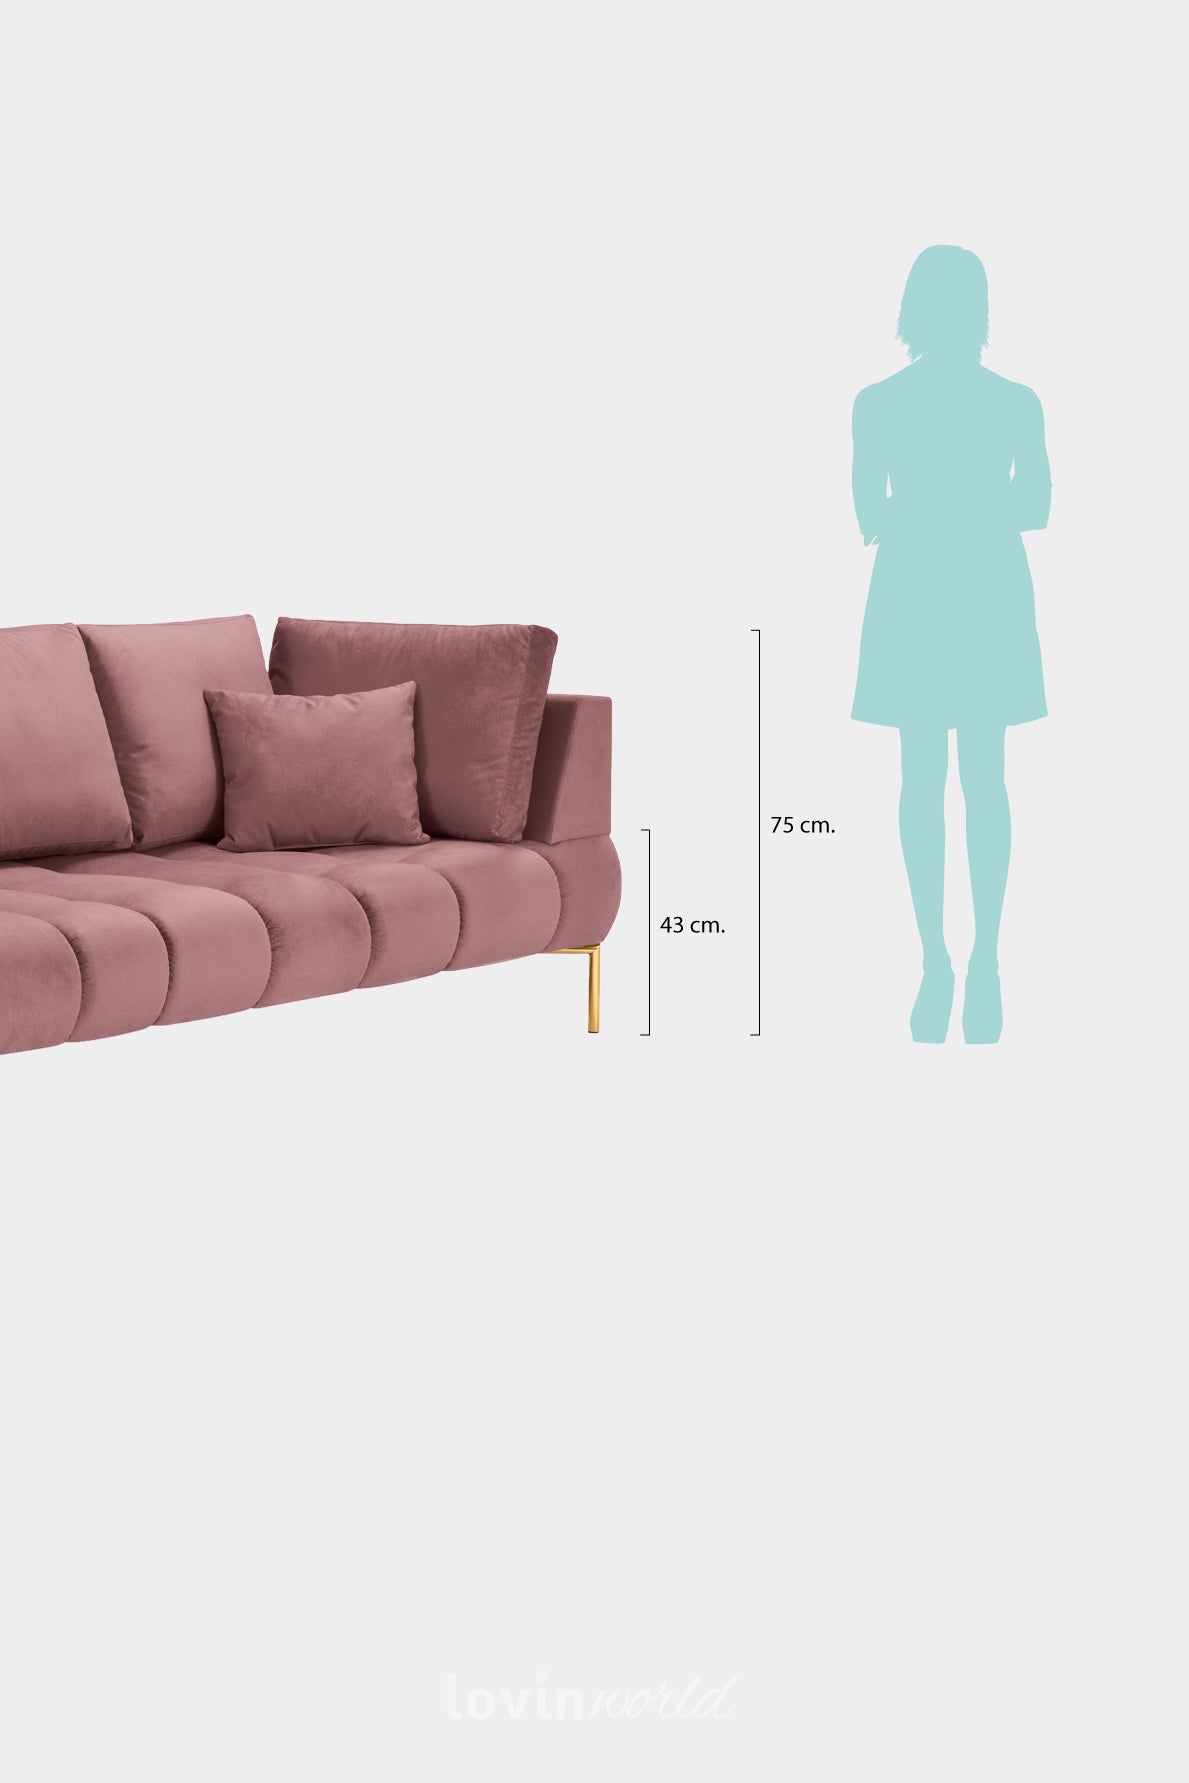 Chaise longue Malvin, in velluto rosa con gambe dorate-LovinWorld